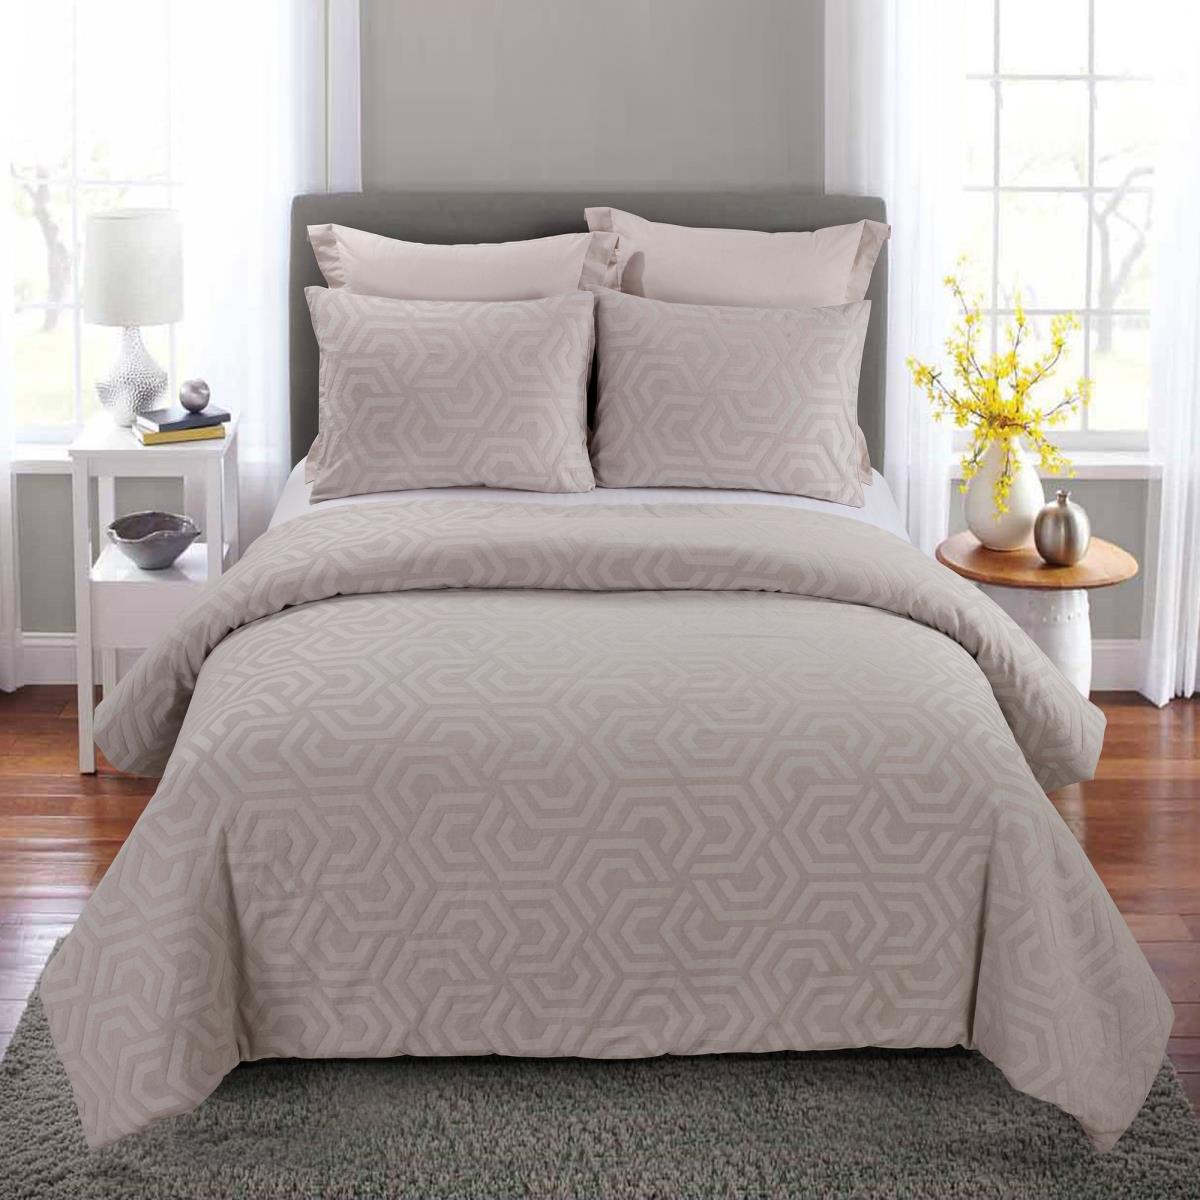 Y00713 King Size Comforter Set - Seville Blush